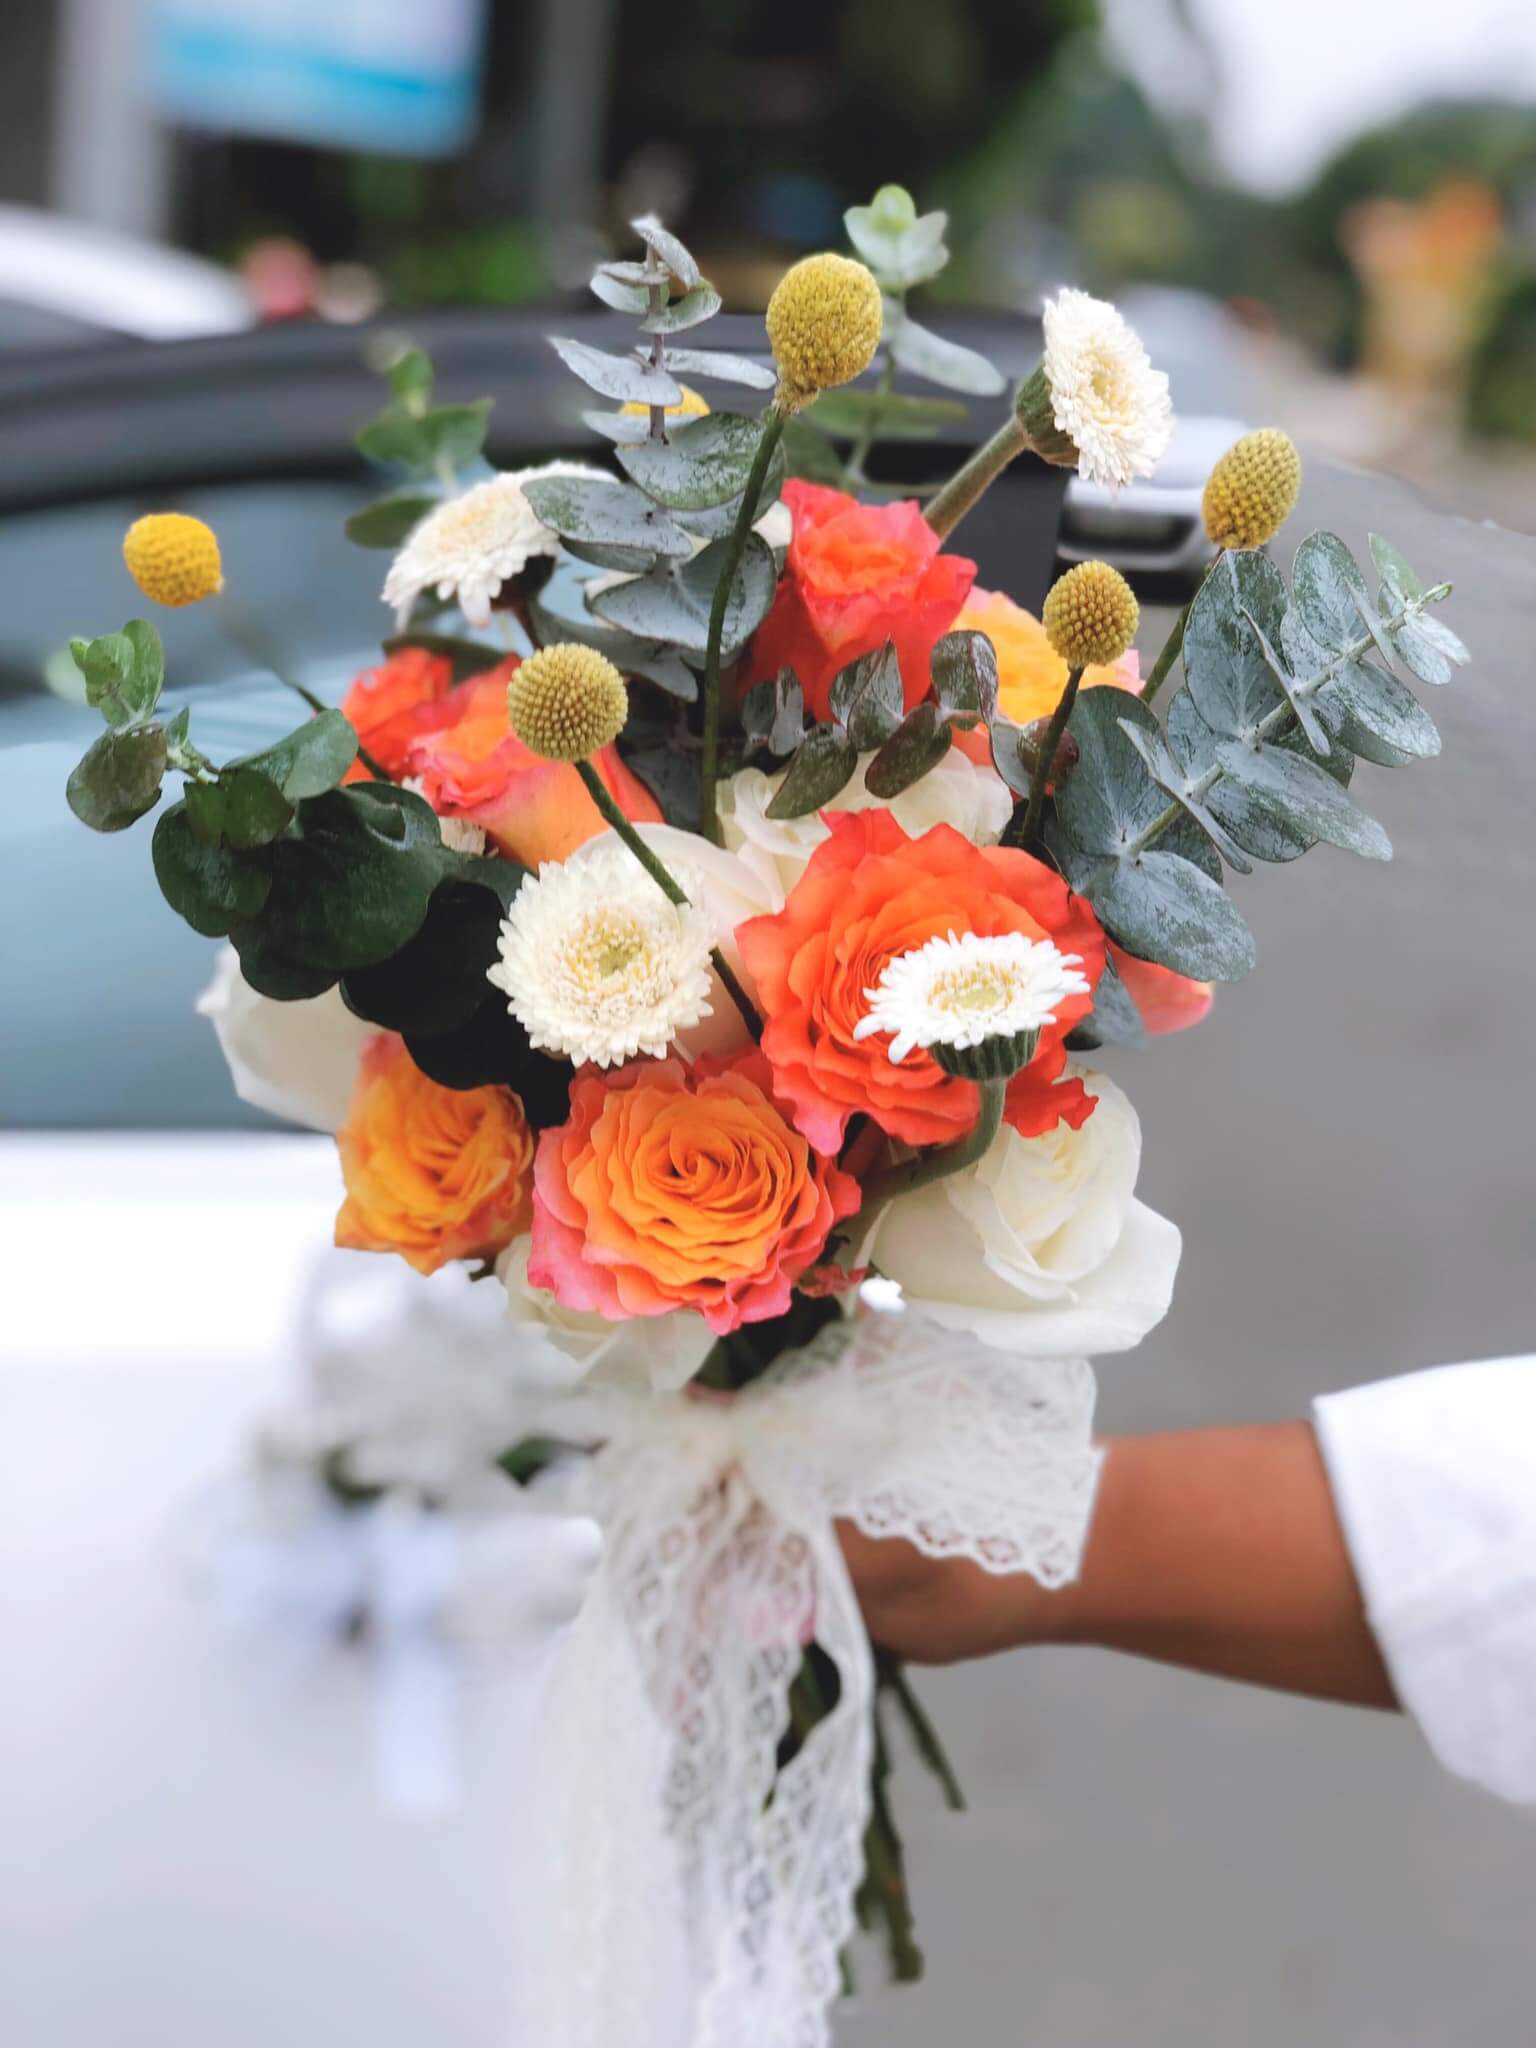 Hoa cưới được làm tại MT Flower - địa chỉ làm hoa cưới uy tín tại Bình Dương